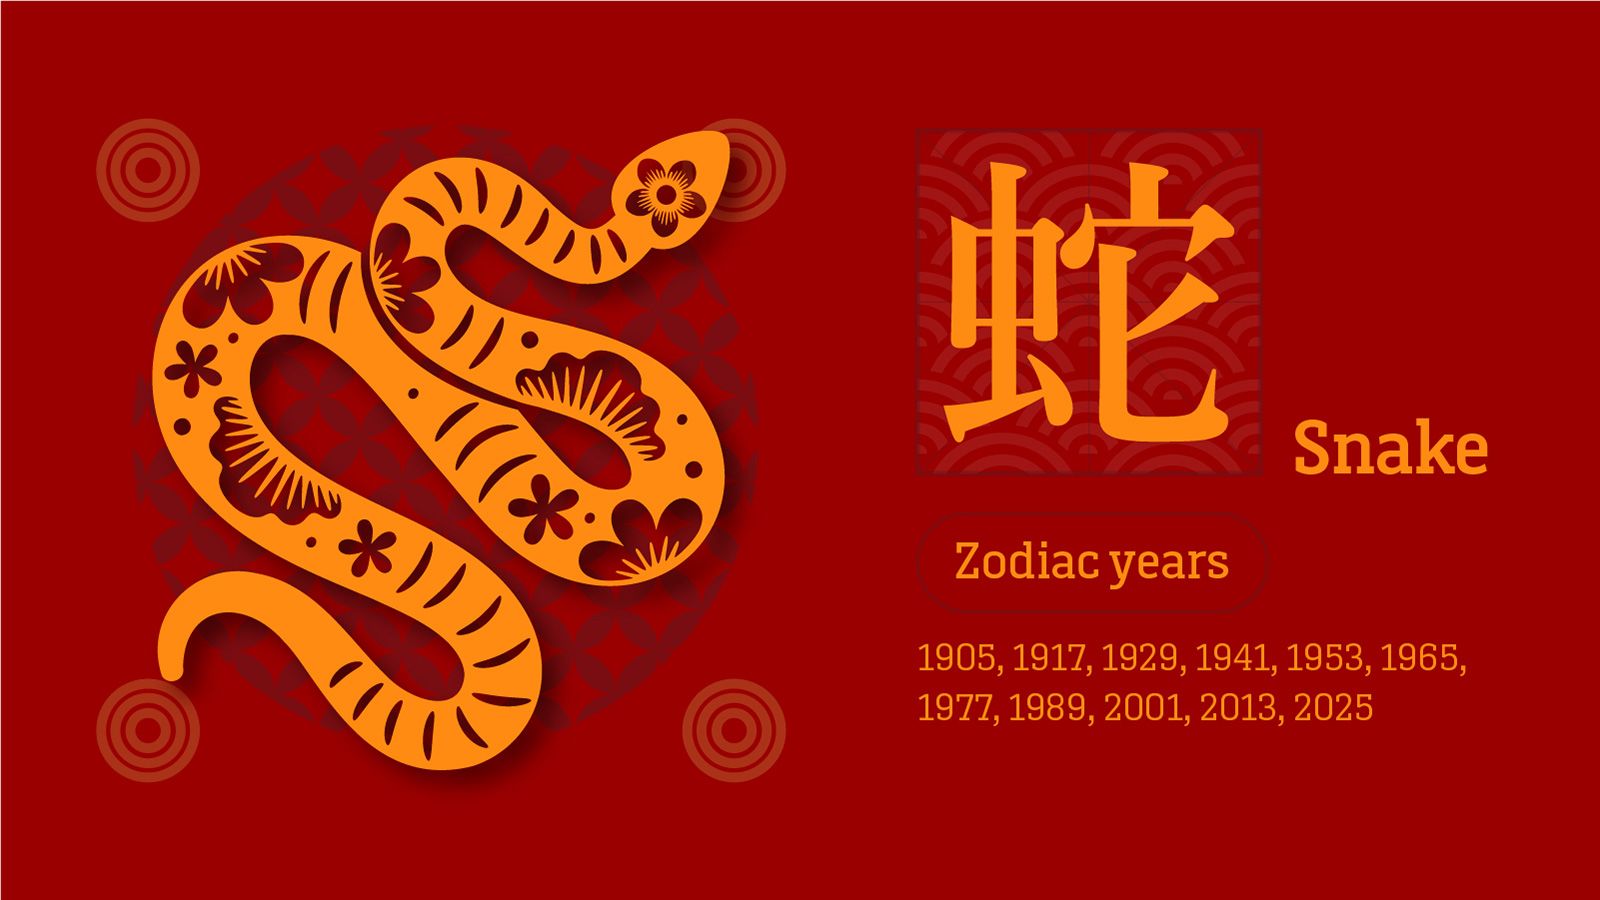 previsões da sorte do horóscopo chinês: o que nos espera no ano do dragão